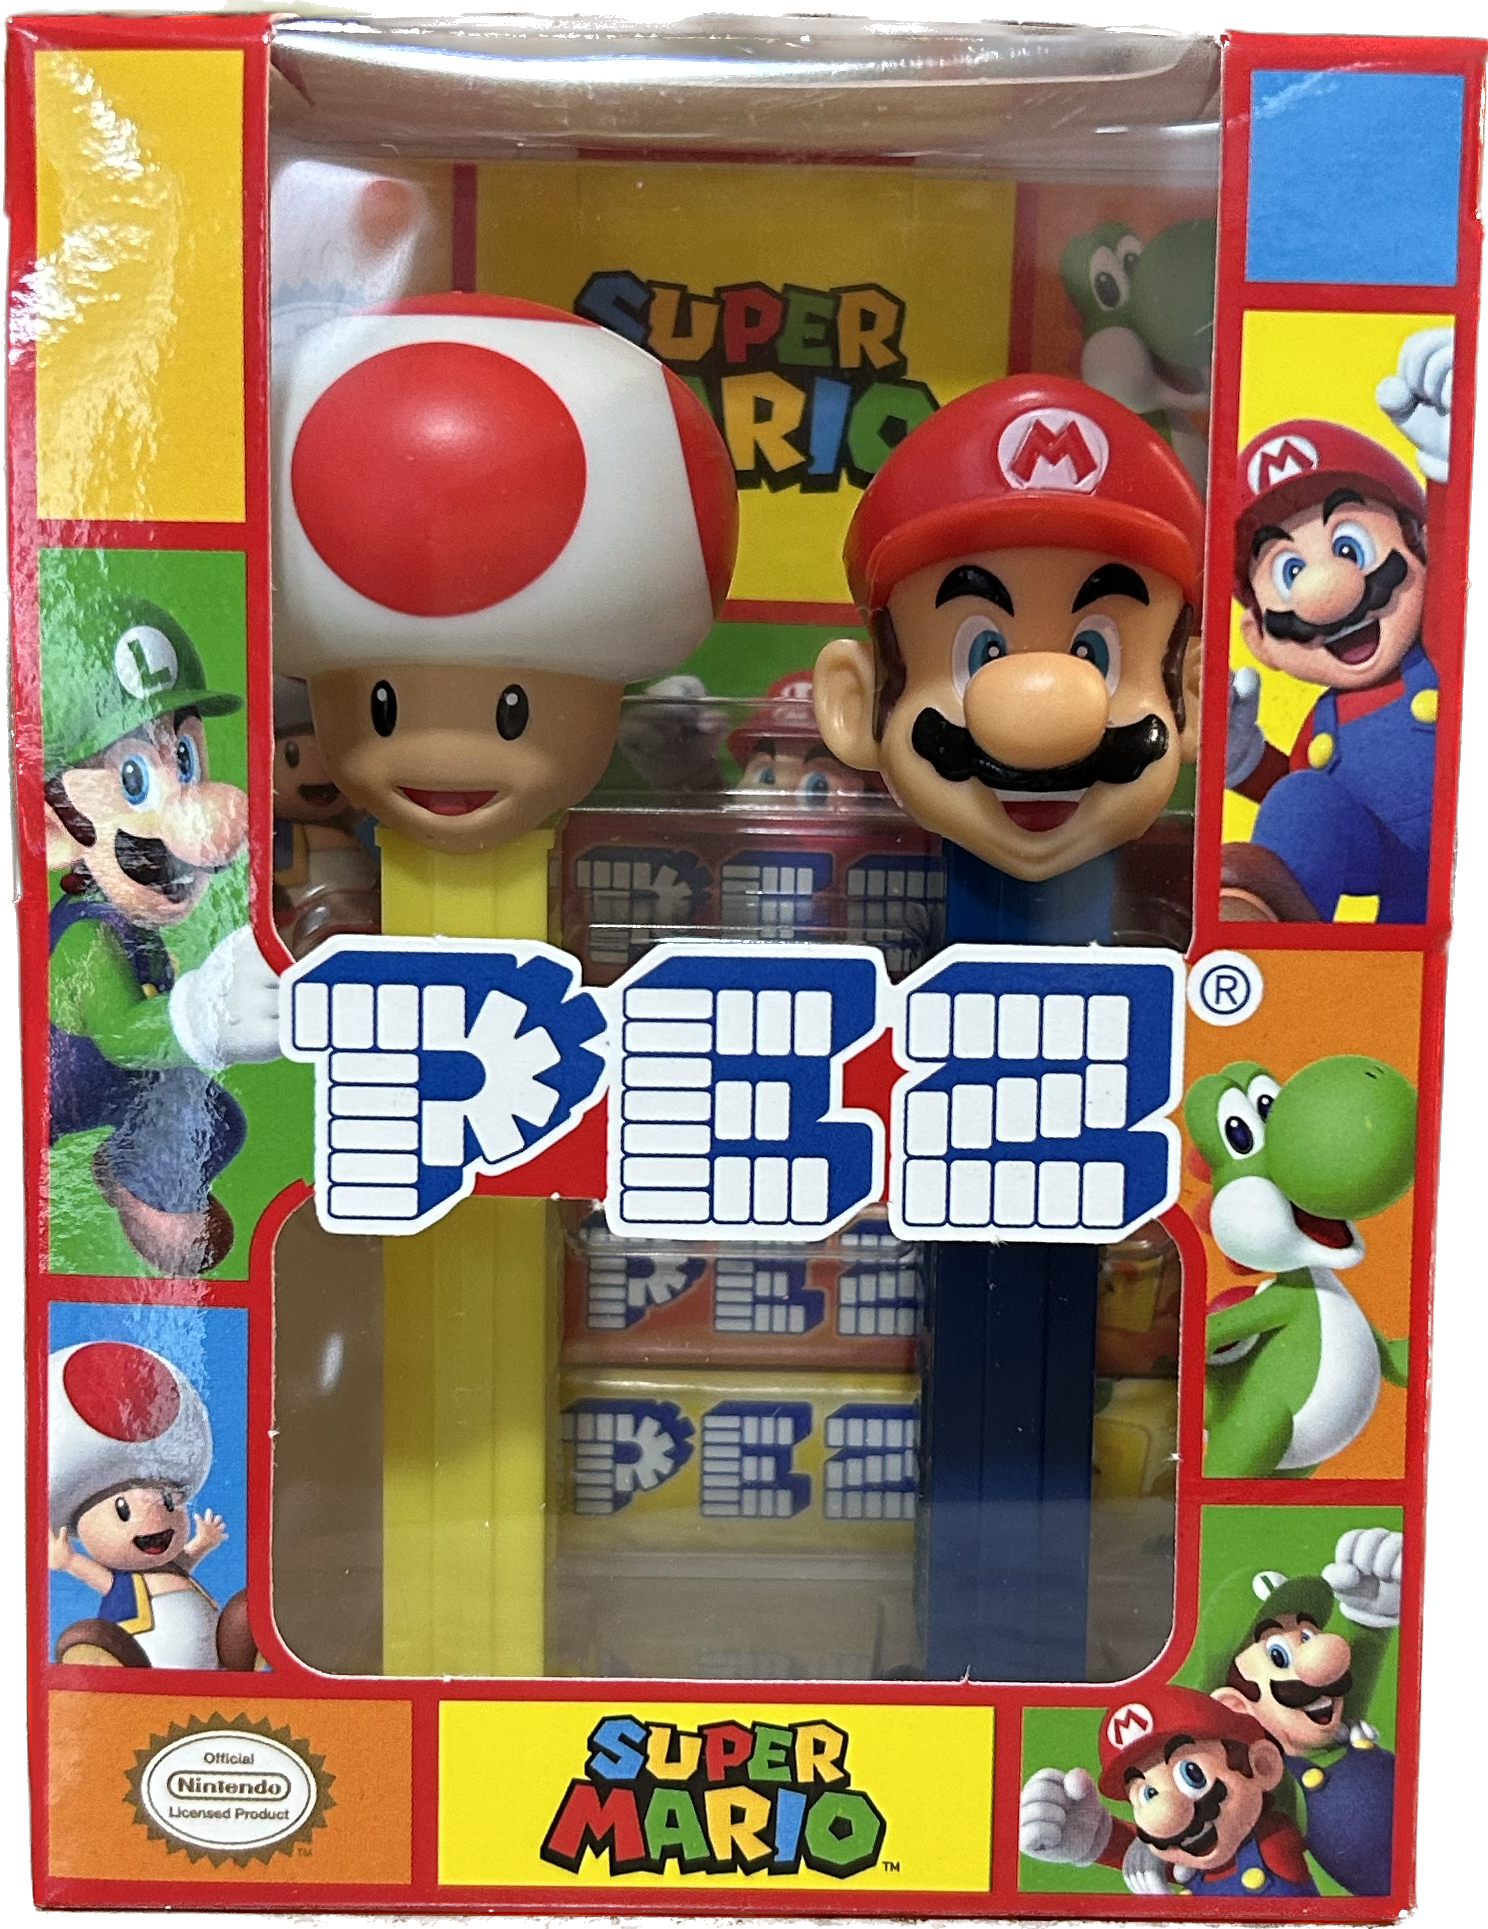 Pez -Dispenser di Caramelle + Caramelle - Pack Nintendo Super Mario 34 –  Acquista Online al Miglior Prezzo - Fit or Fat Market